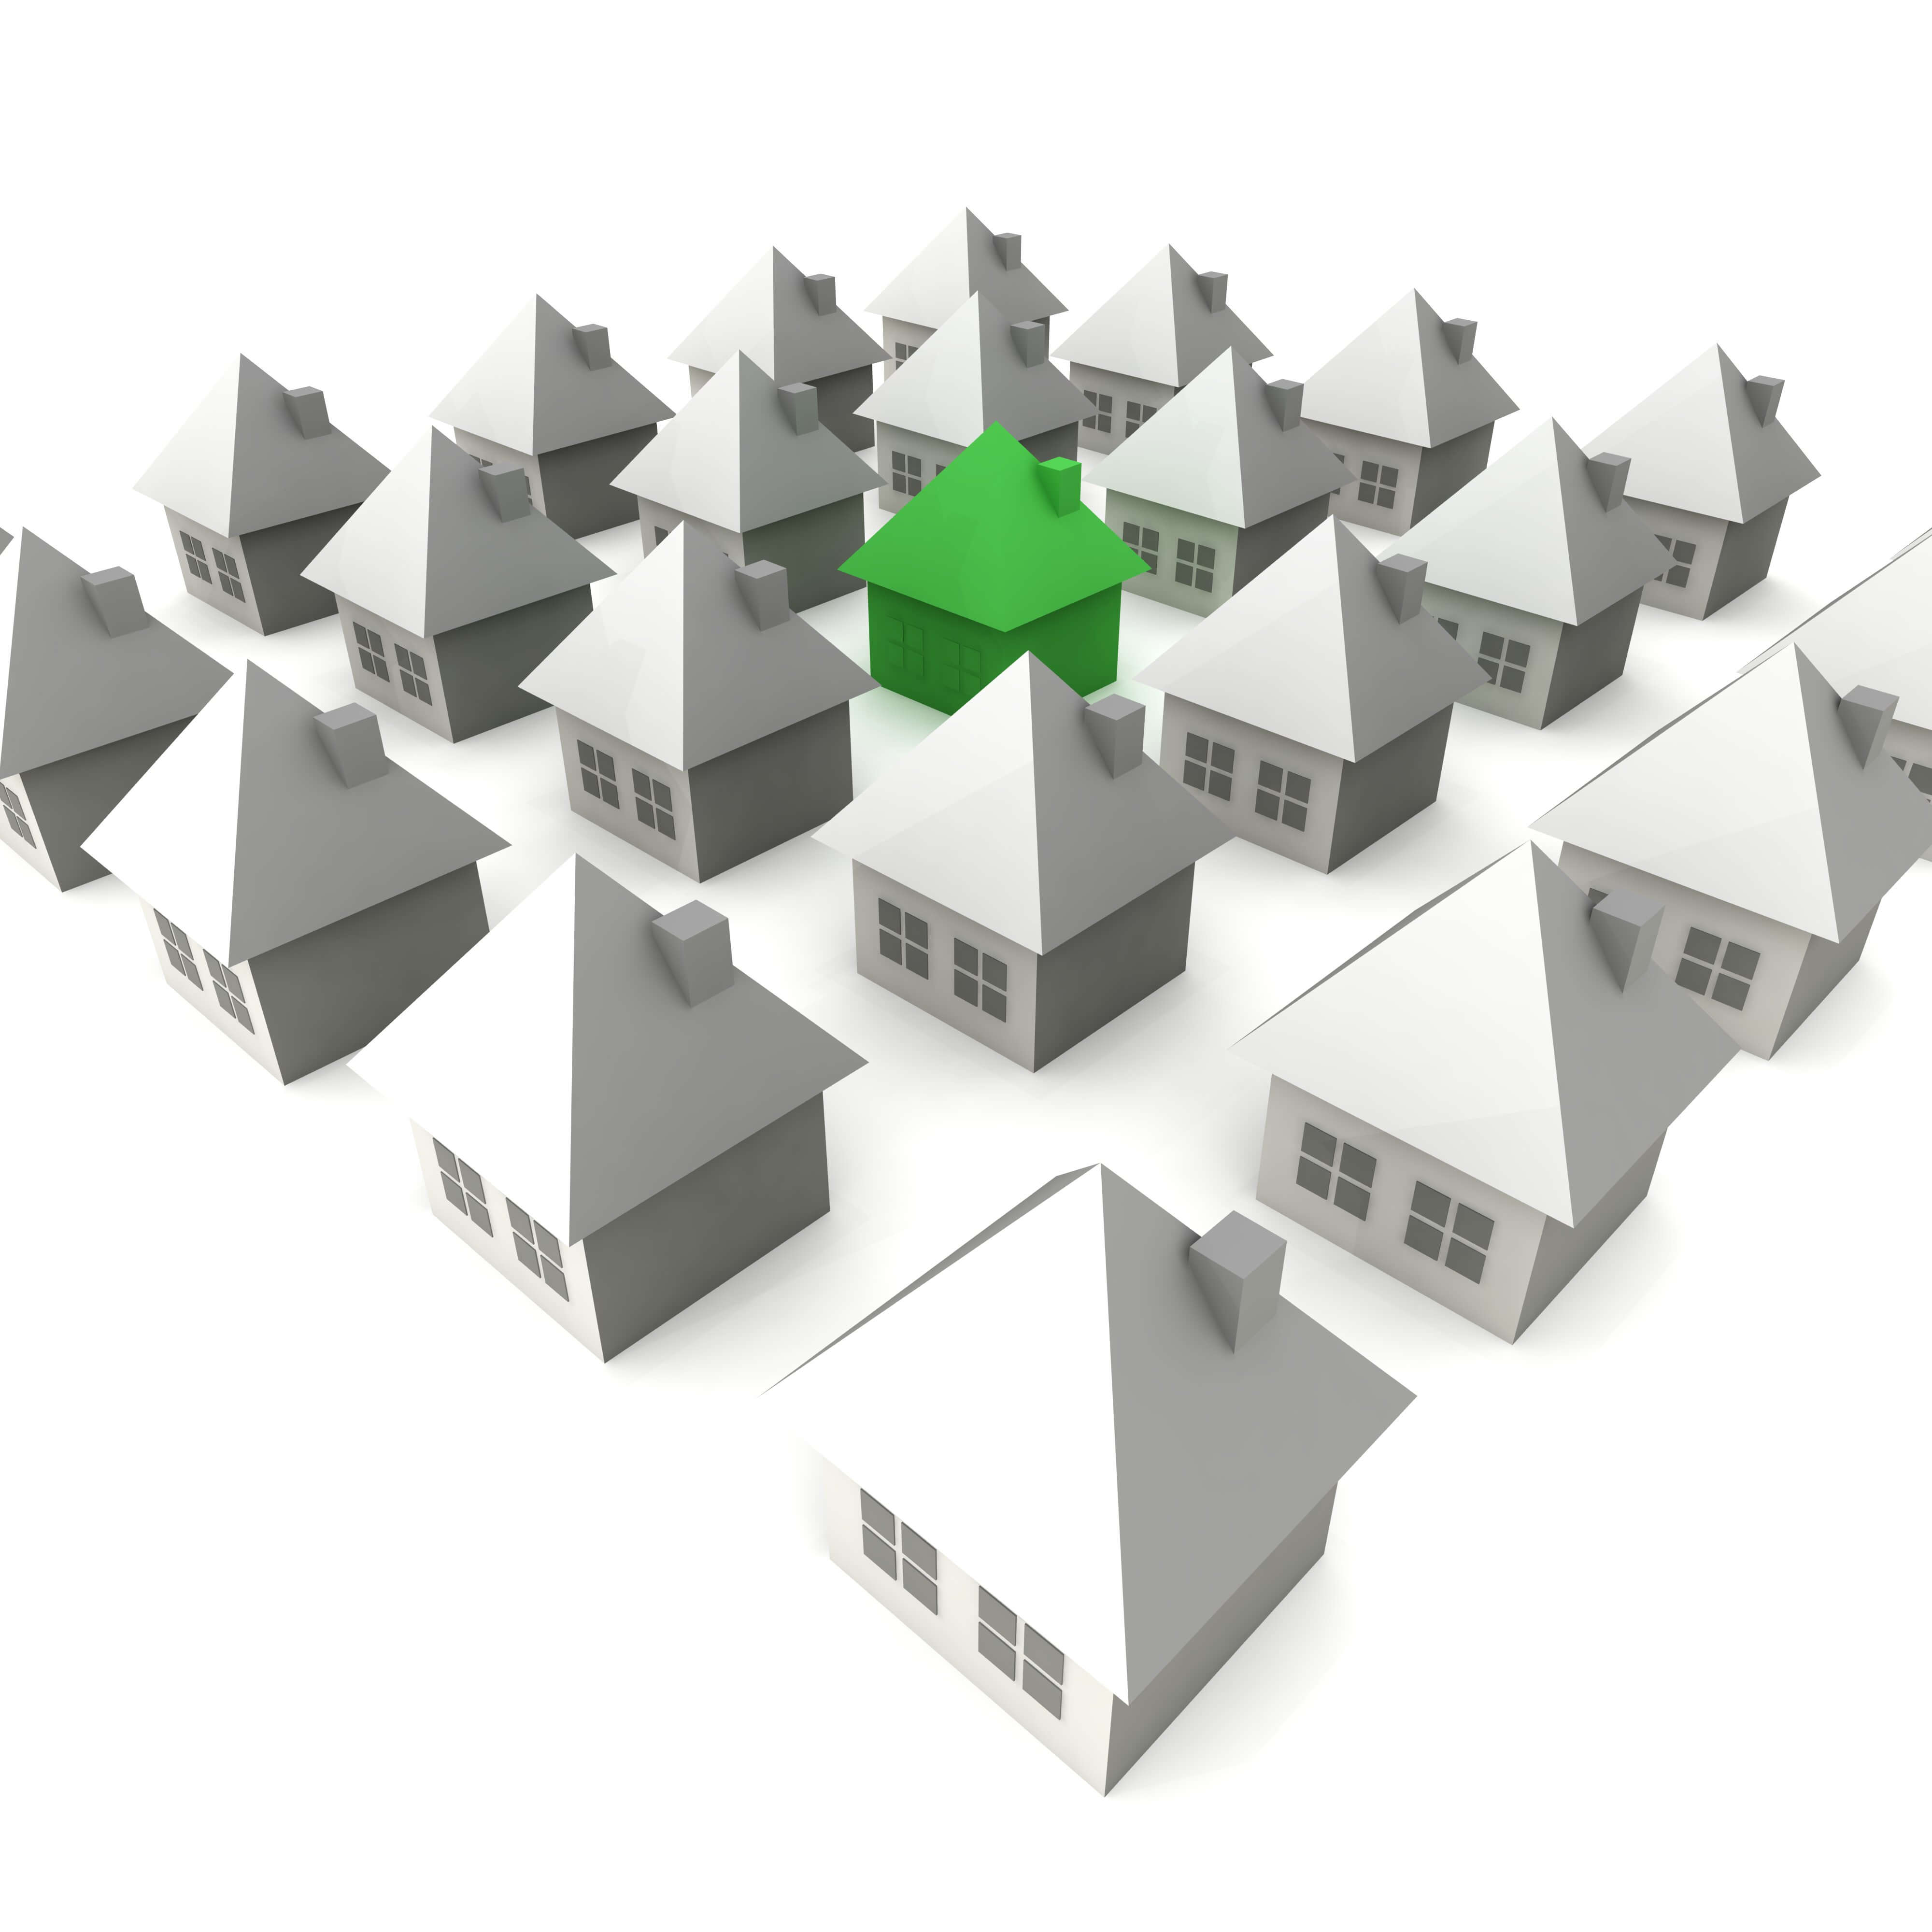 Kredyt mieszkaniowy a kredyt hipoteczny – różnice i przeznaczenie